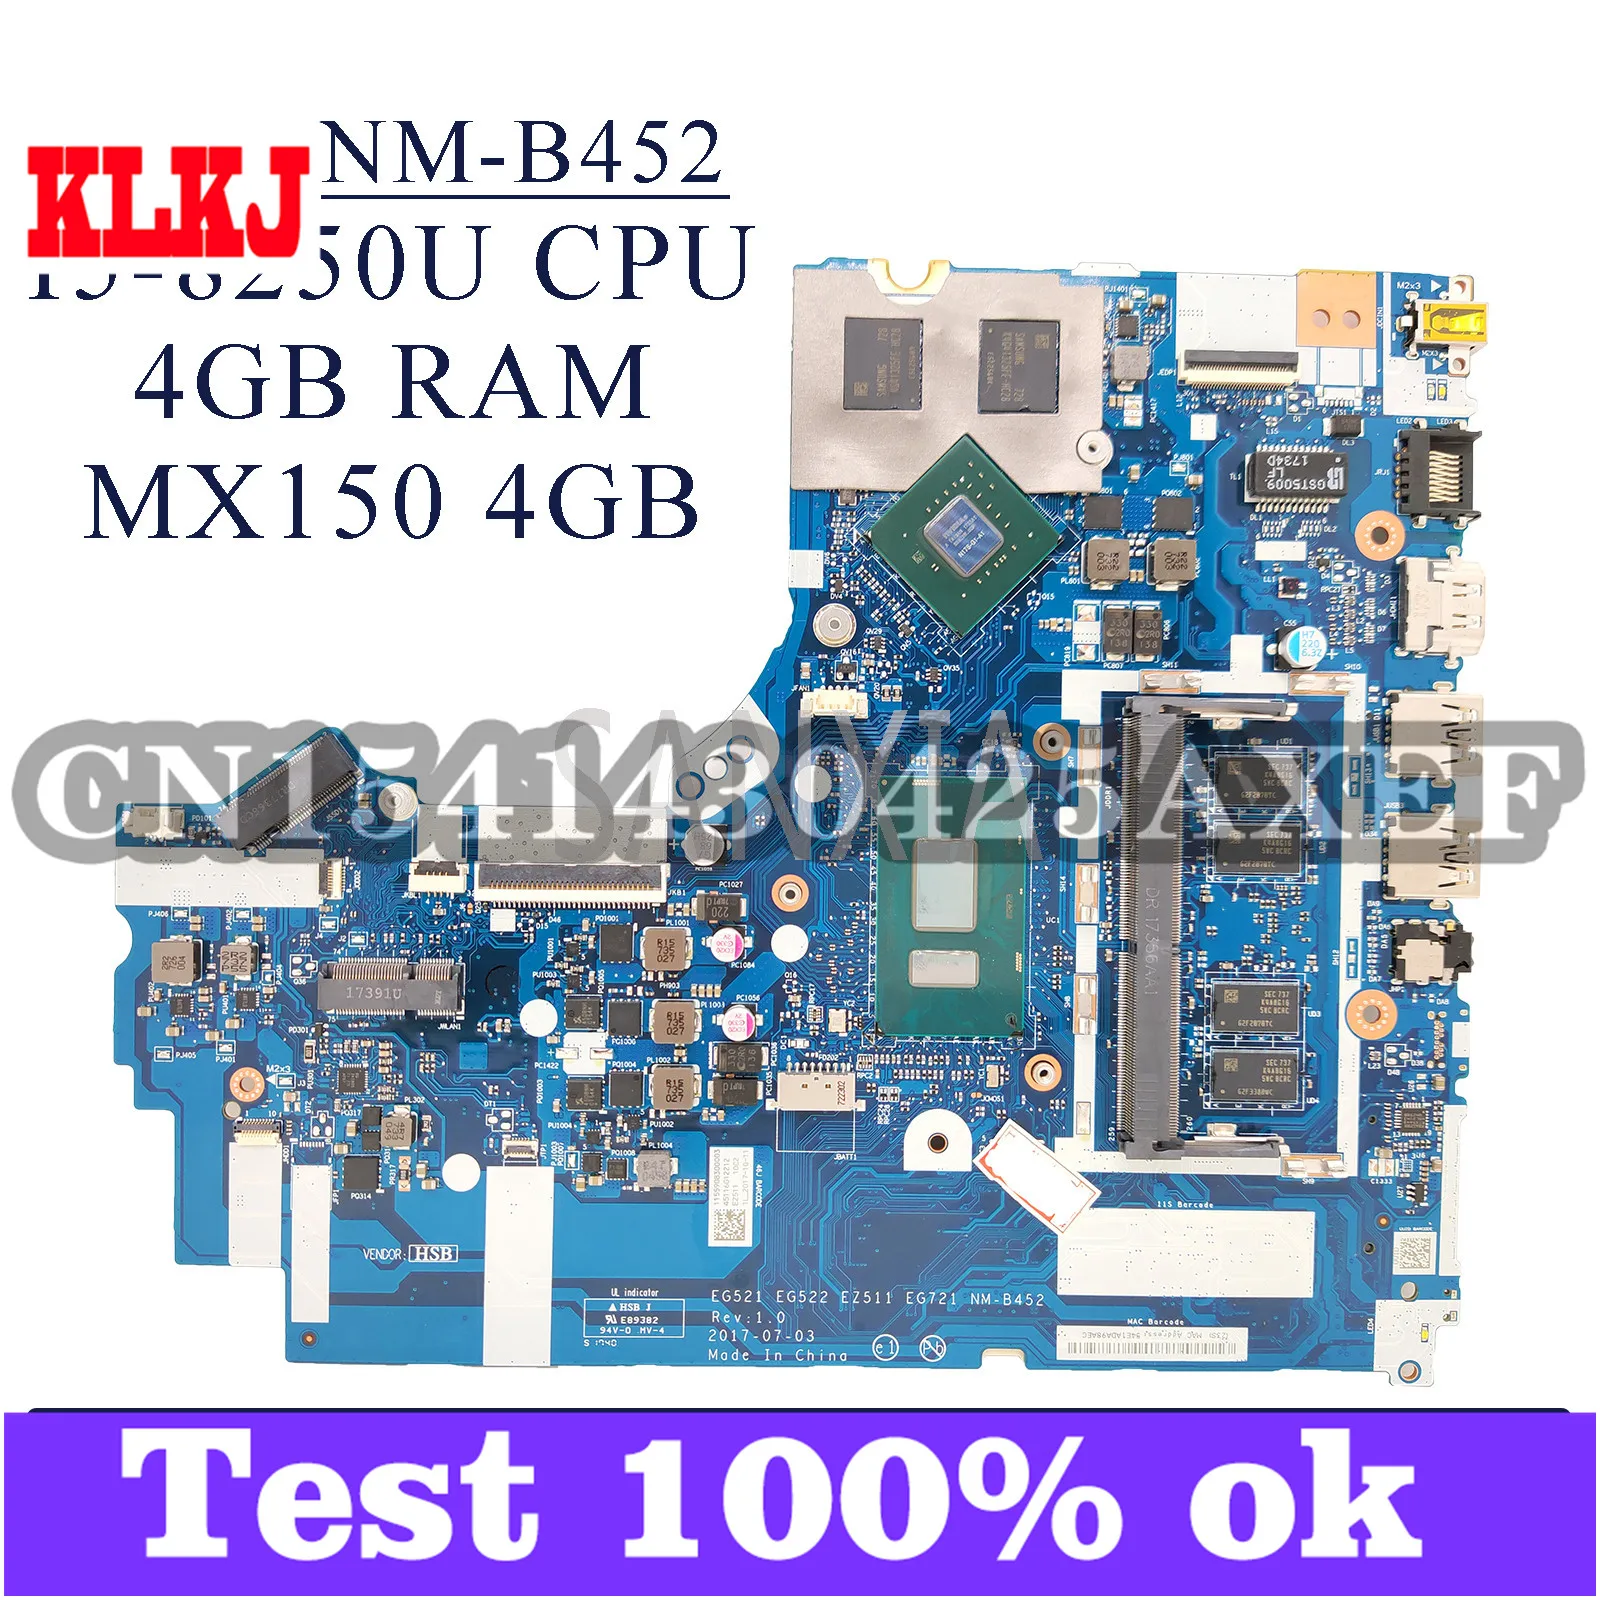 

KLKJ NM-B452 Laptop Motherboard For Lenovo Ideapad 520-15IKB Original Mainboard 4GB-RAM I5-8250U MX150-4GB